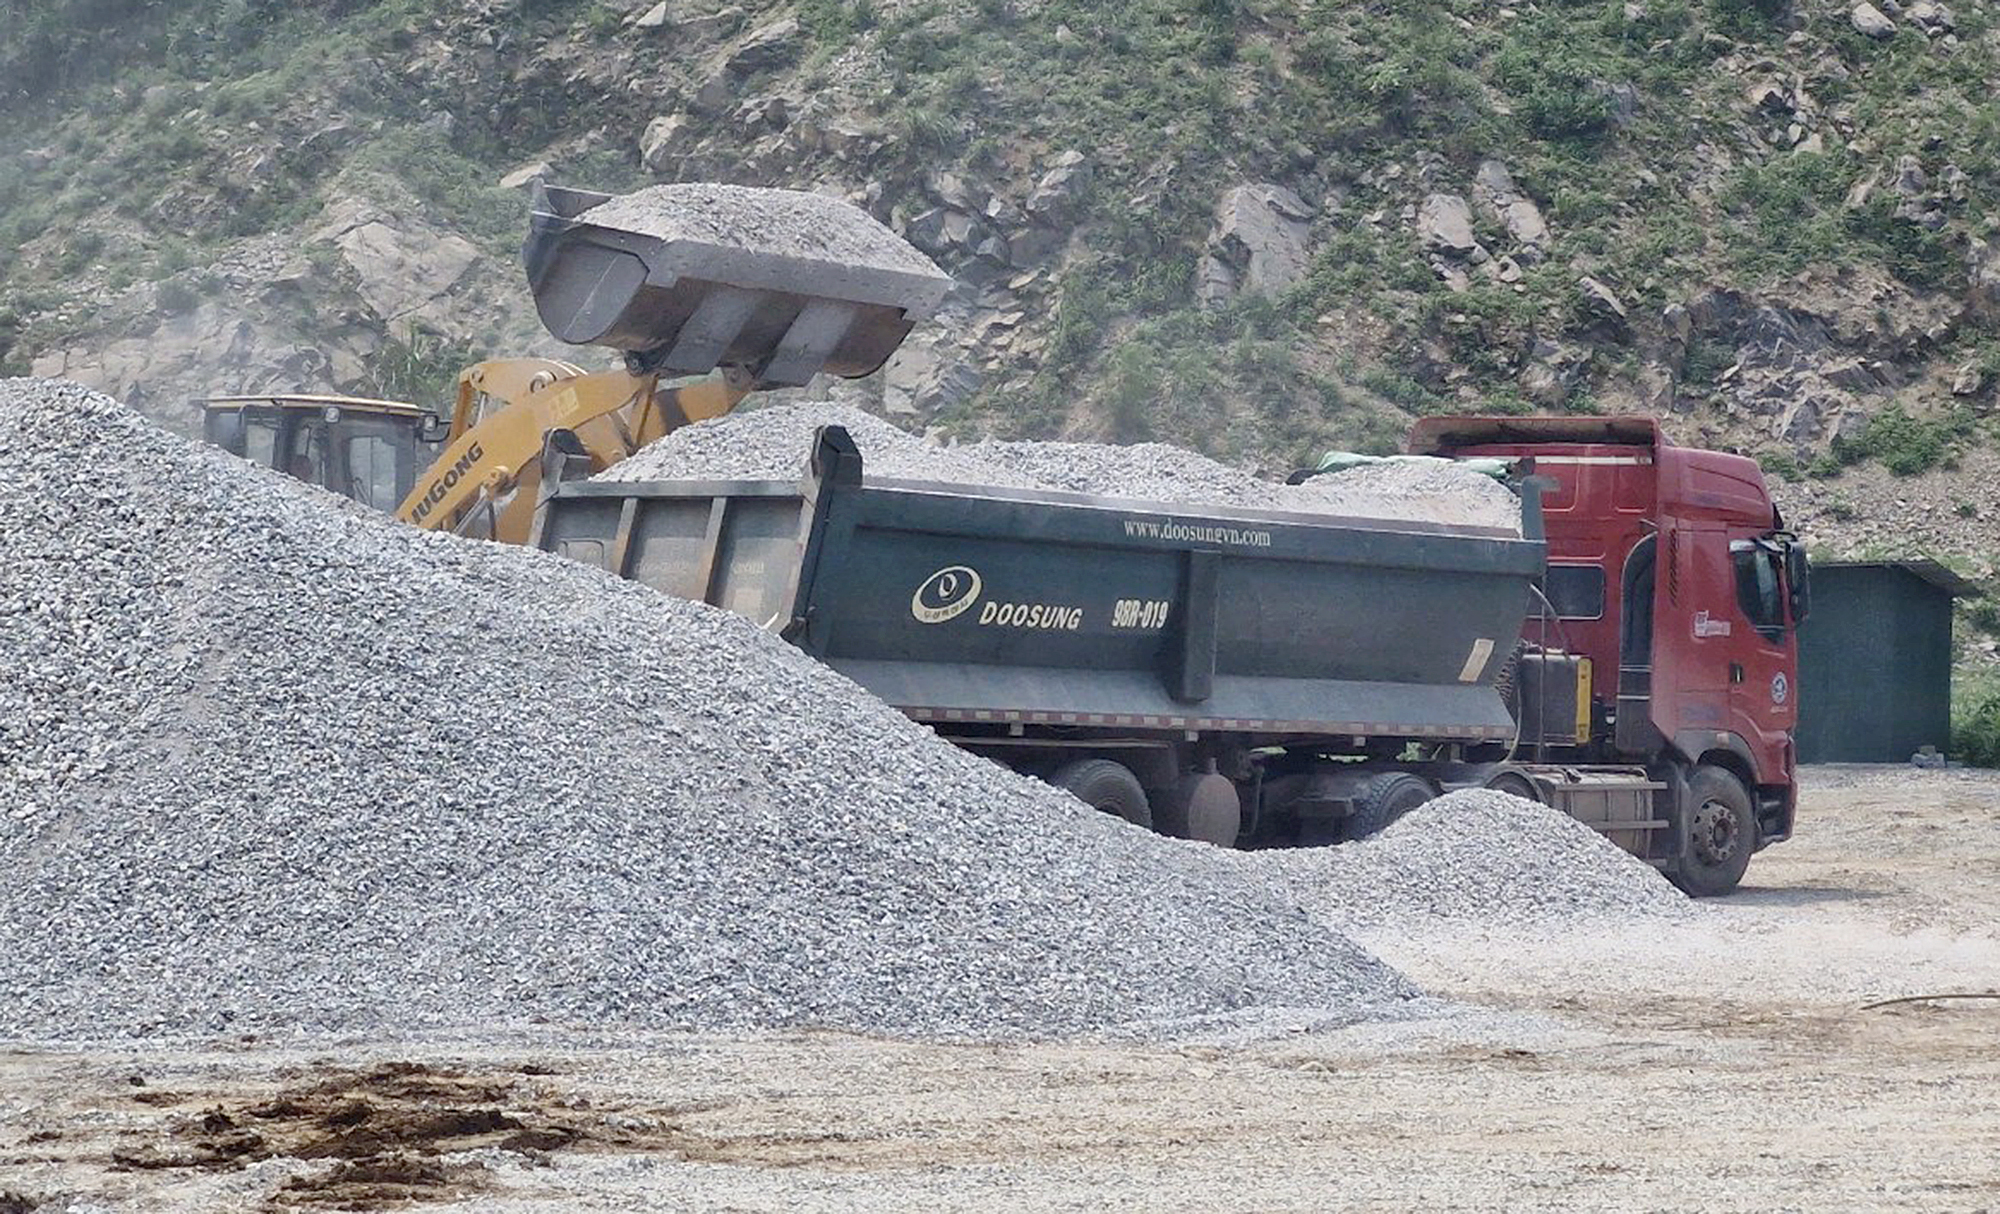 Chủ mỏ đá tiếp tay xe quá tải: Chưa đủ điều kiện vẫn hoạt động- Ảnh 1.